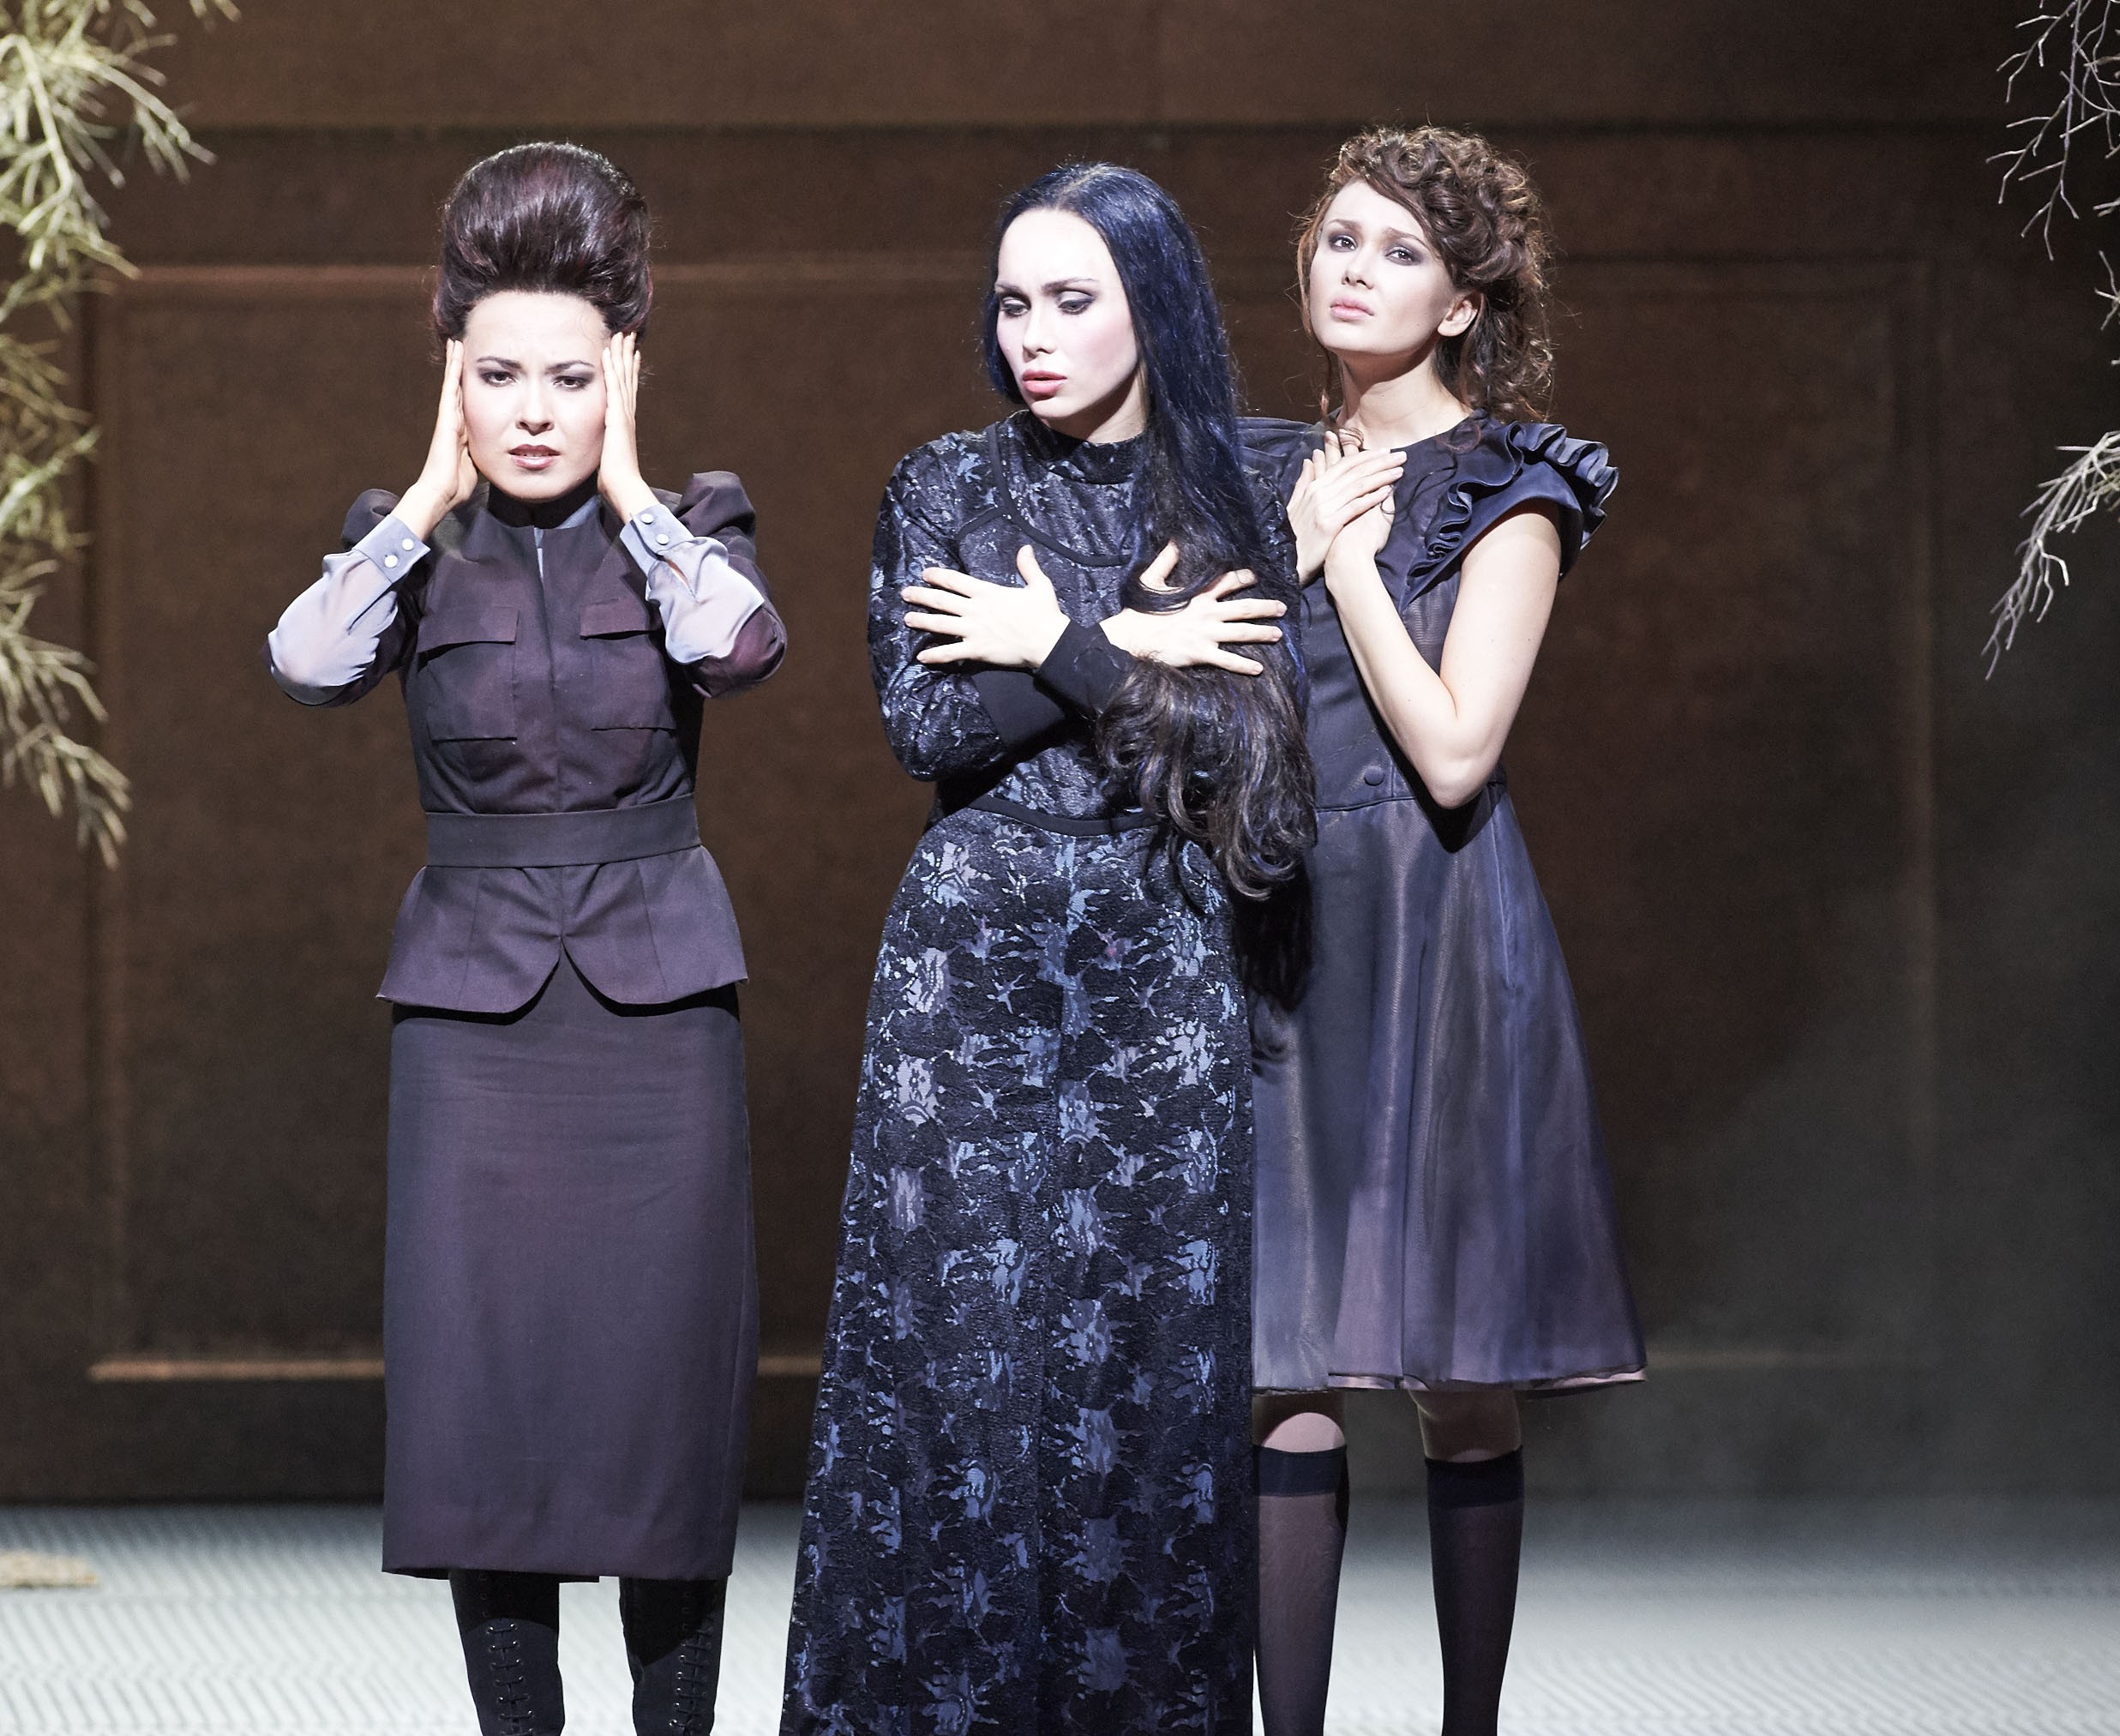 the three sisters by chekhov